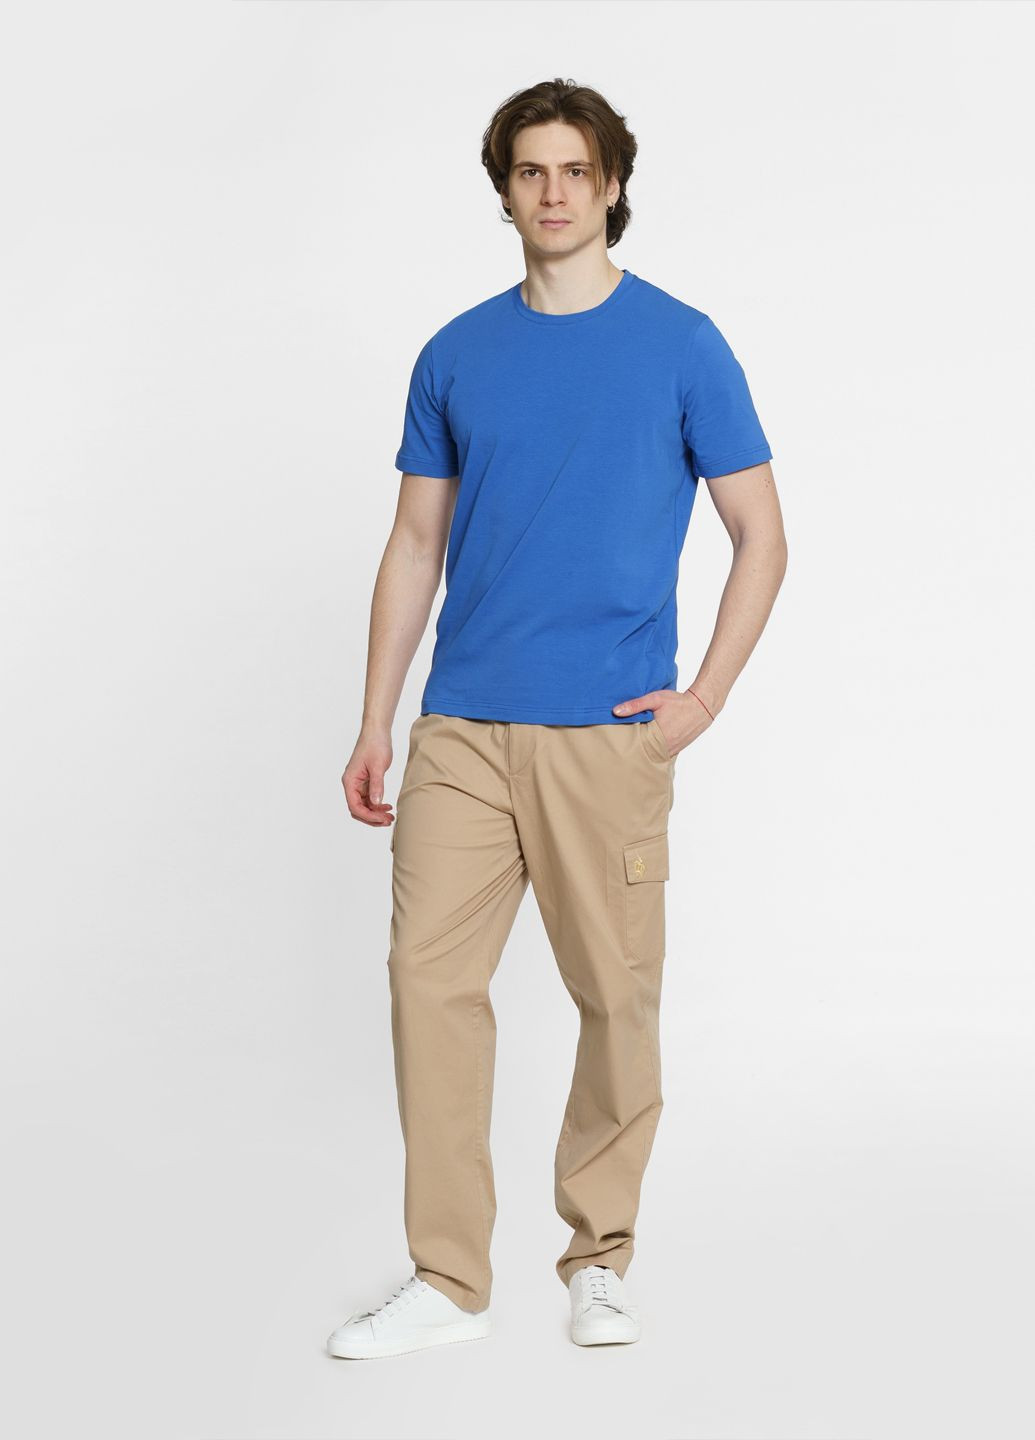 Синяя футболка мужская синяя Arber T-SHIRT FF19